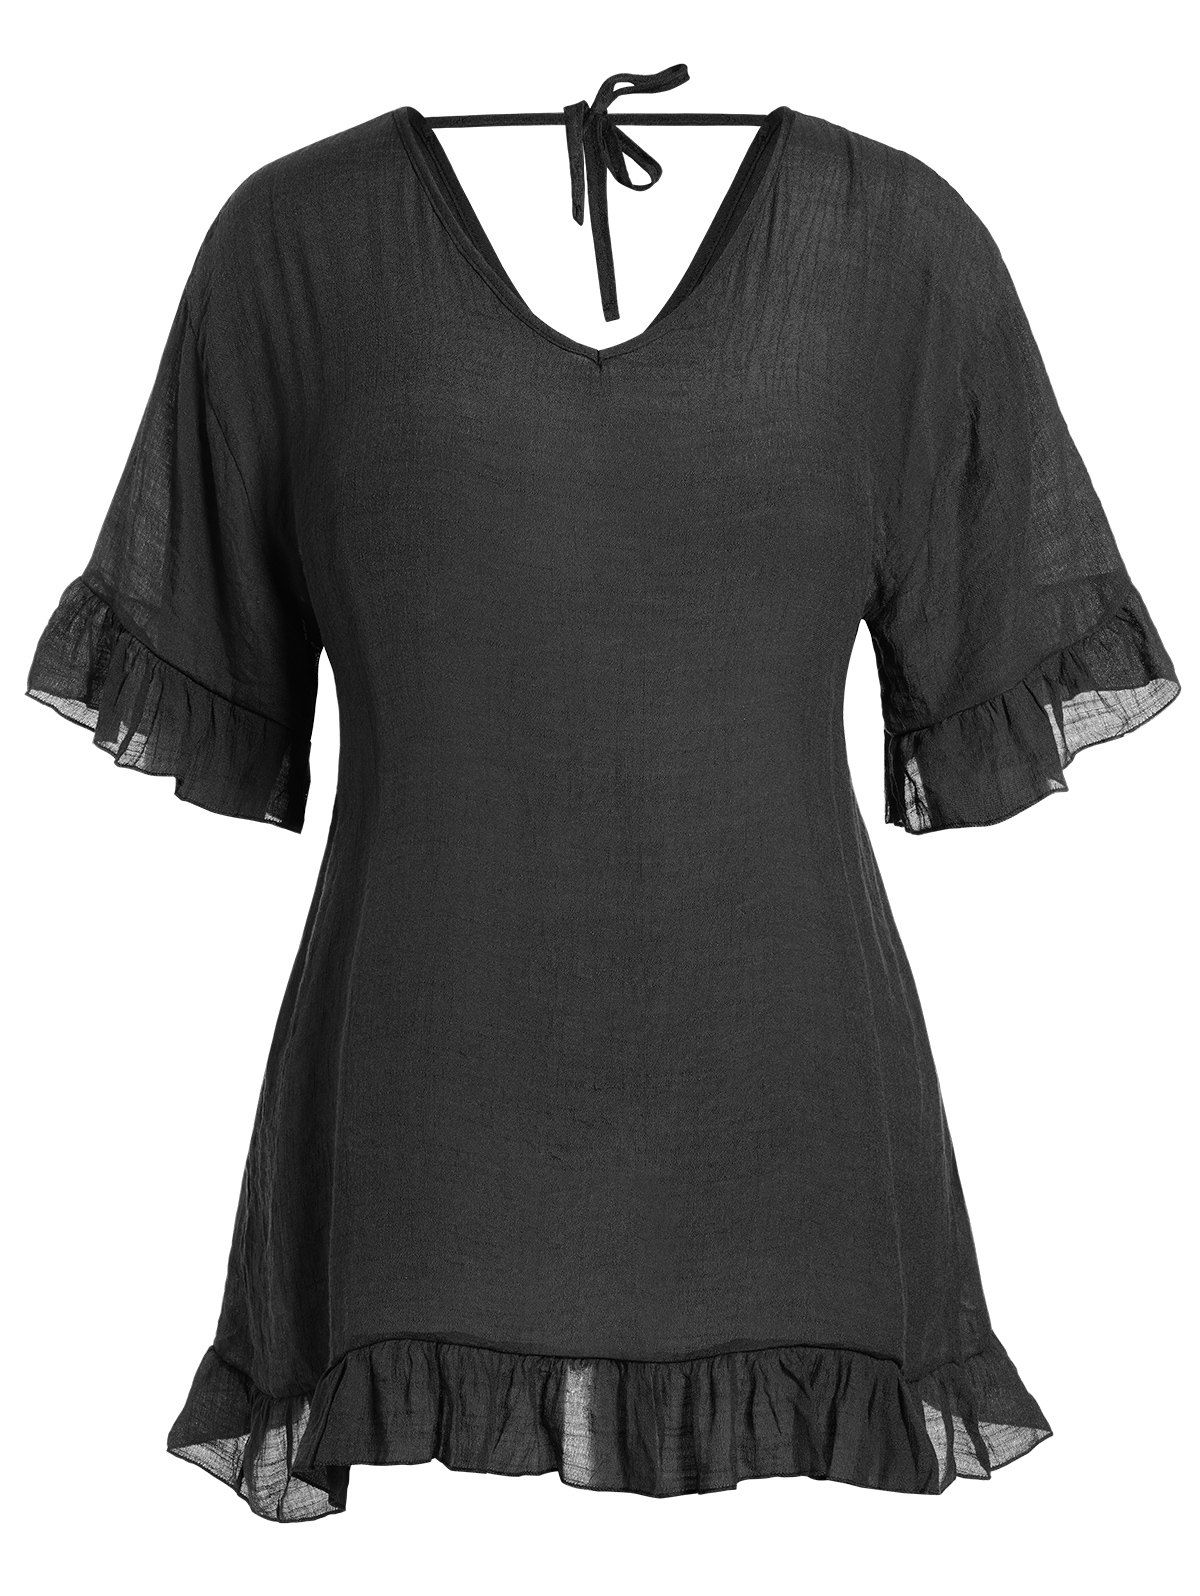 Plus Size Cover-up Dress Plain Color Flounce Hem Mini Beach Cover-up Dress - BLACK 3XL